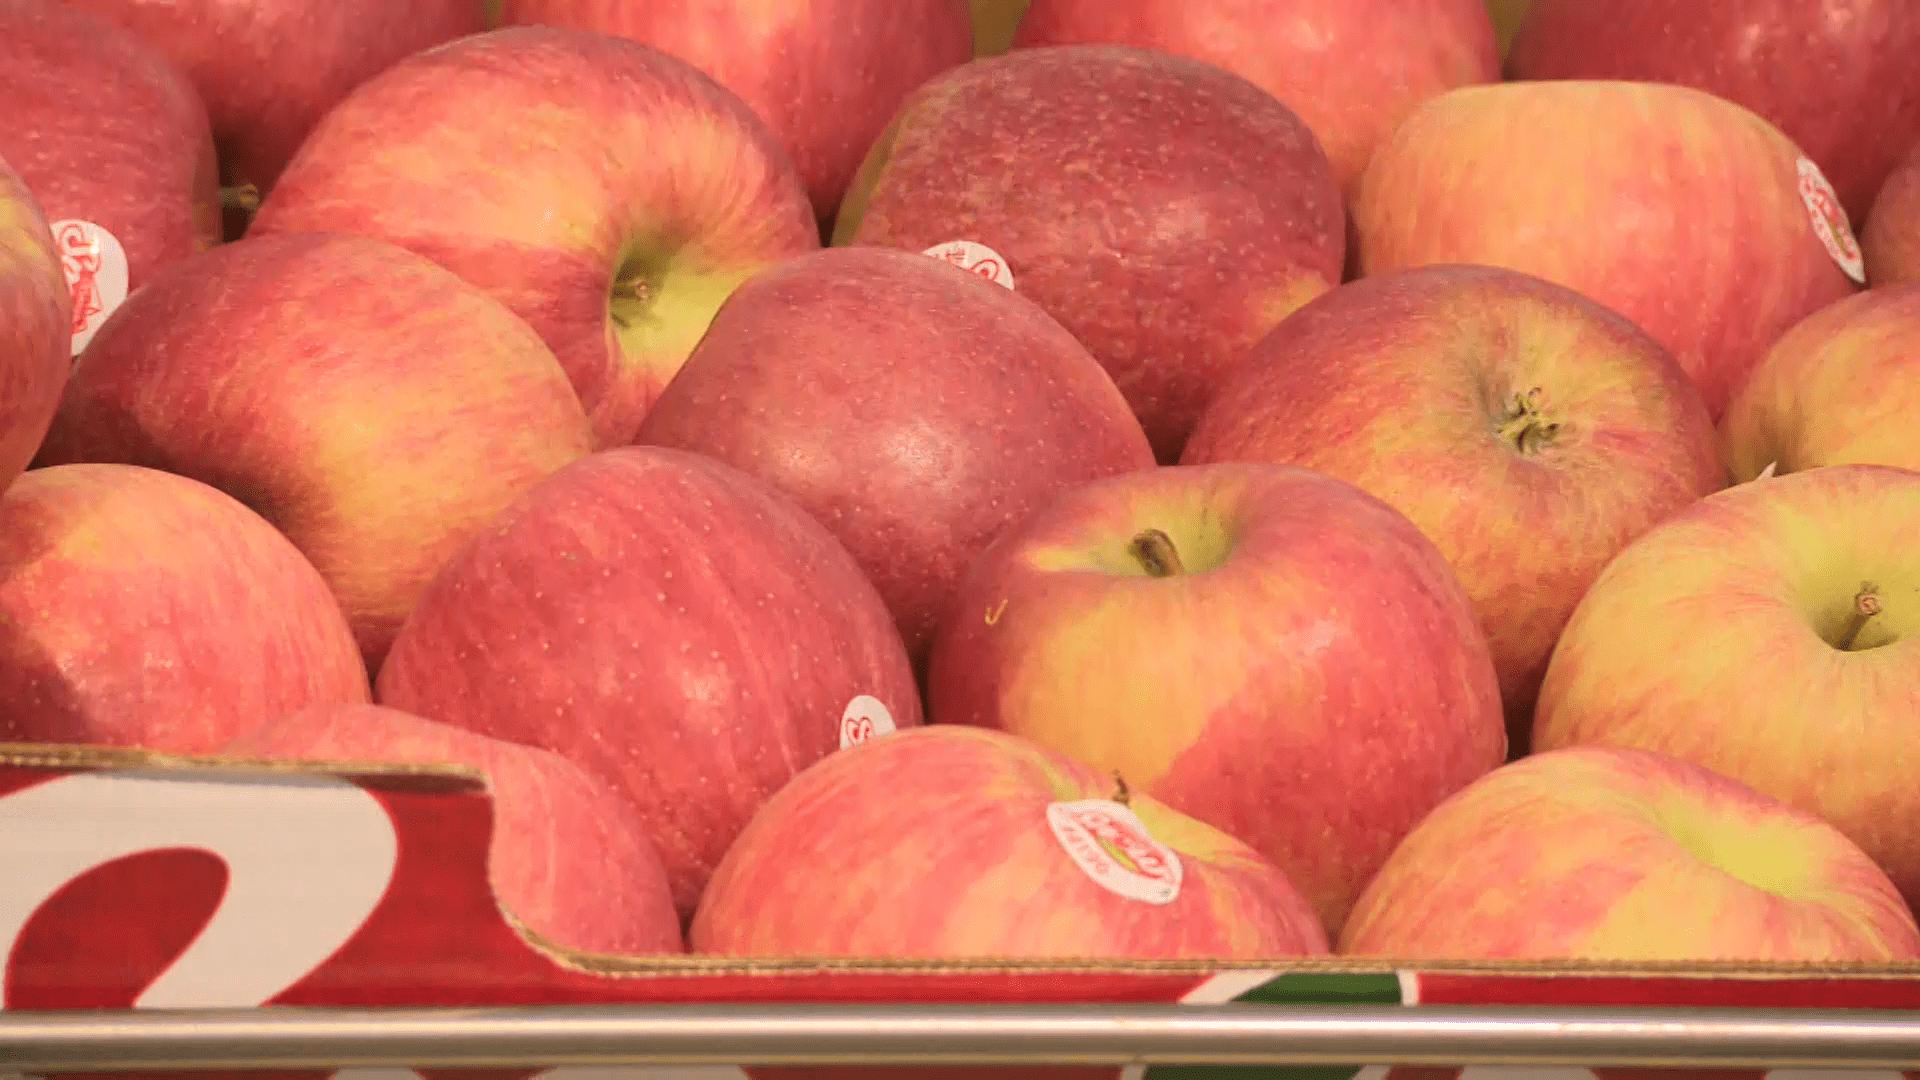 Obchodní řetězce preferují polská jablka kvůli jejich ceně, říkají někteří čeští ovocnáři.